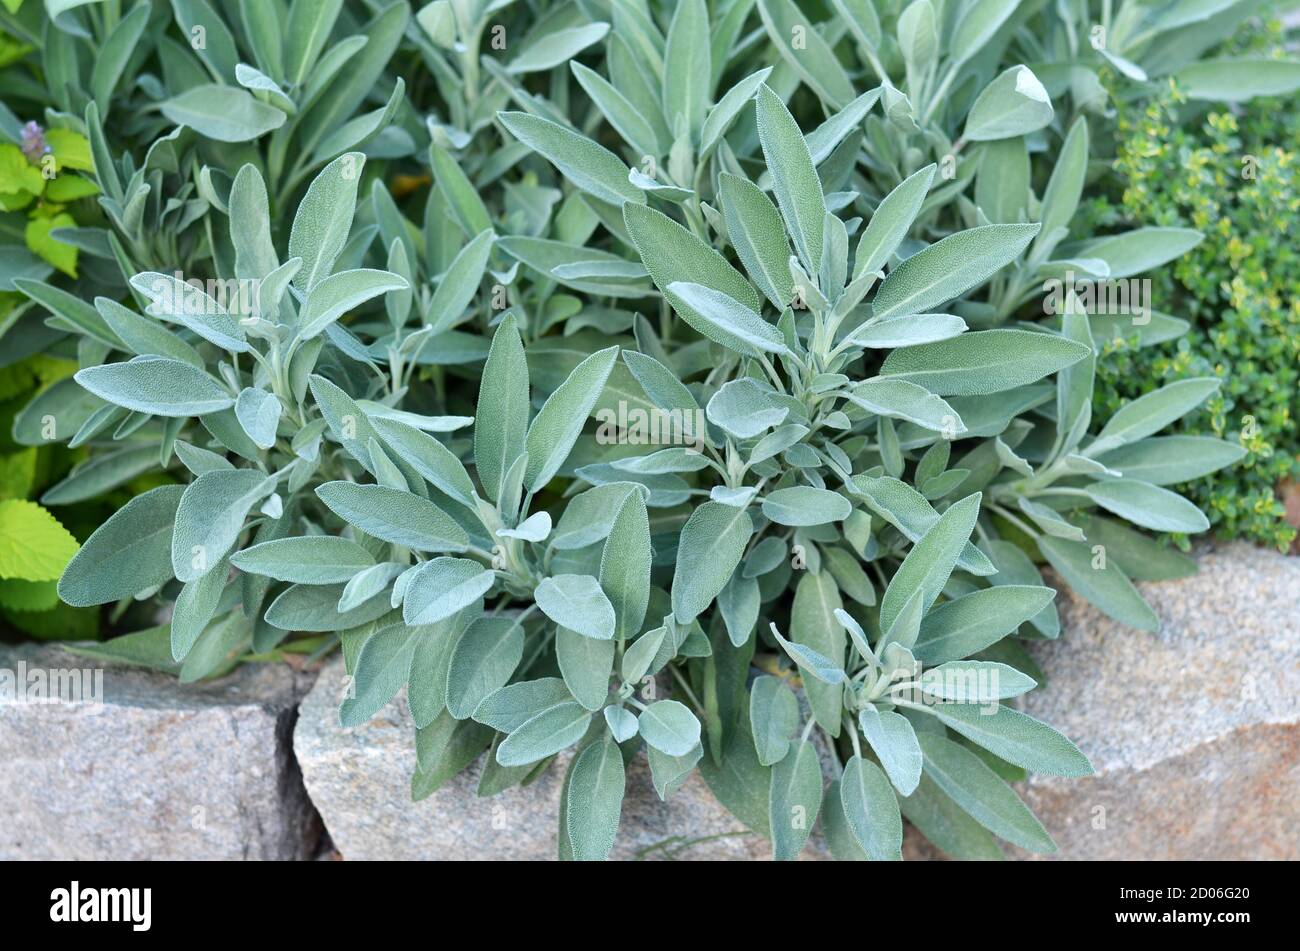 Salvia officinalis oder Salbei - mehrjährige Unterstrauch, in medizinischen und kulinarischen verwendet. Busch von aromatischem Salbei, der im Garten im Freien wächst. Stockfoto